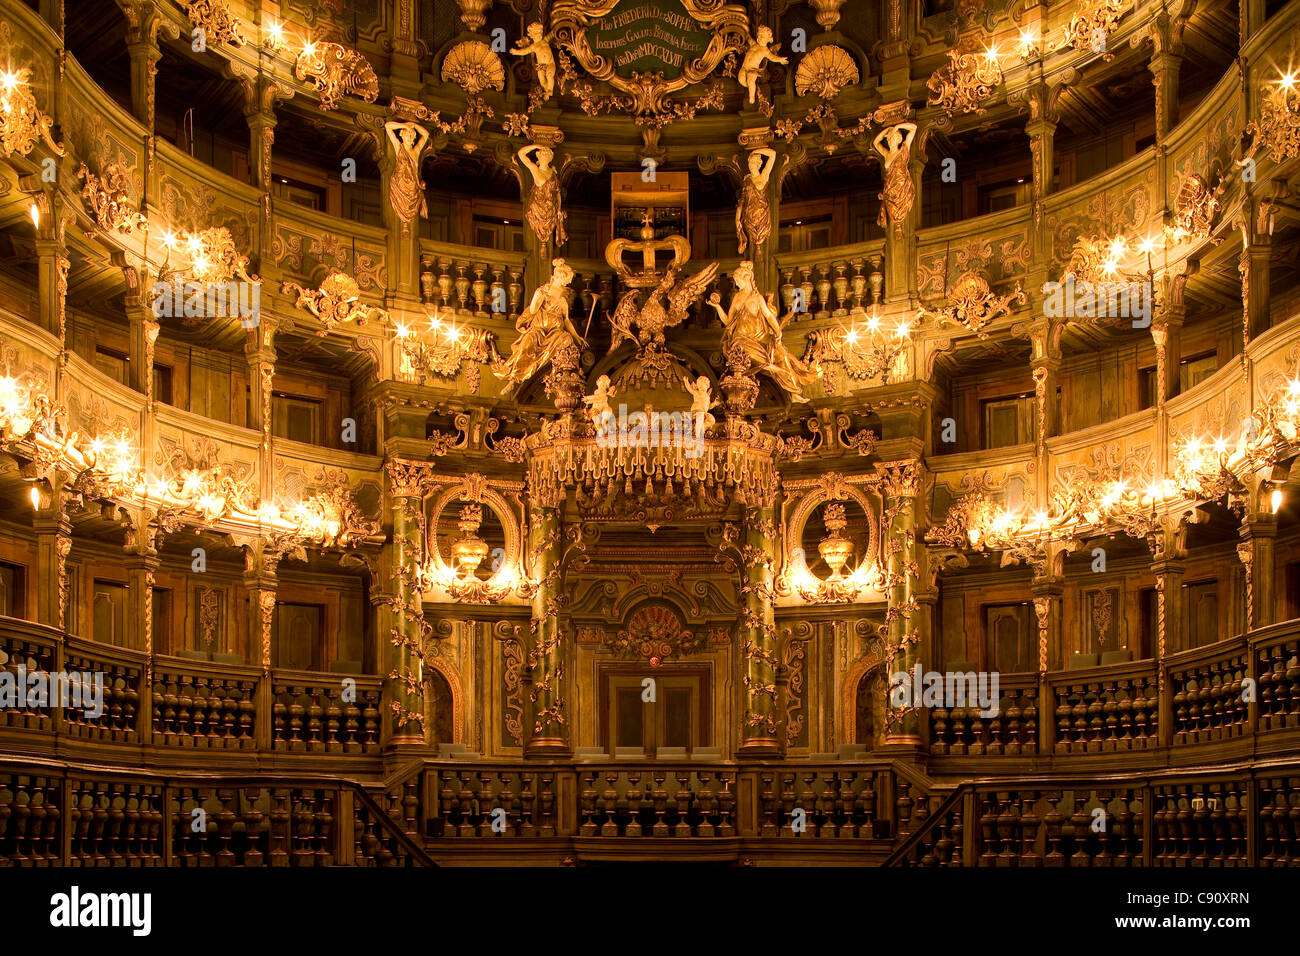 Innenansicht des Markgrafen des Opera House, einem barocken Opernhaus, Bayreuth, Bayern, Deutschland, Europa Stockfoto